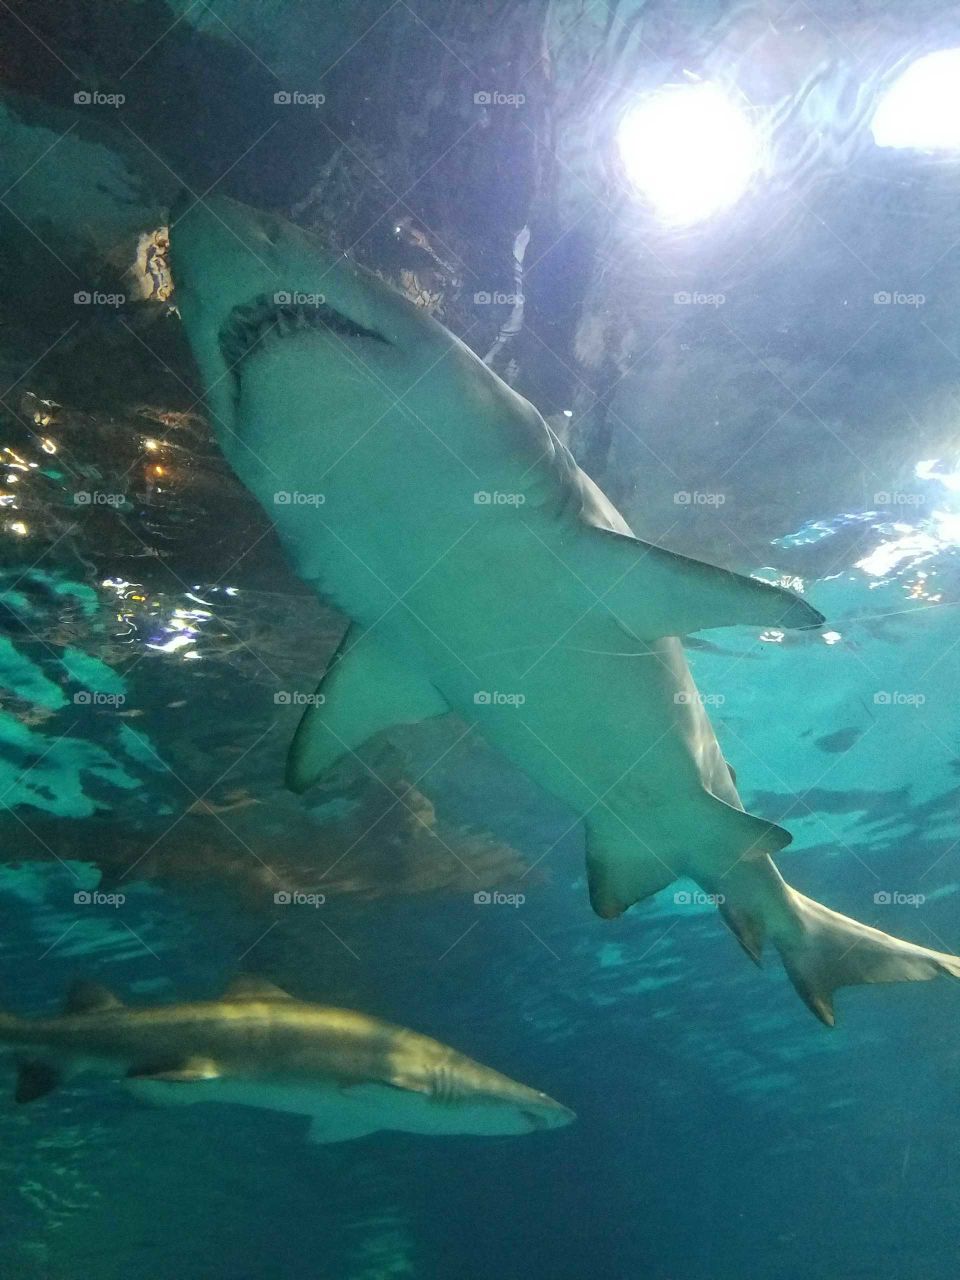 Shark from below